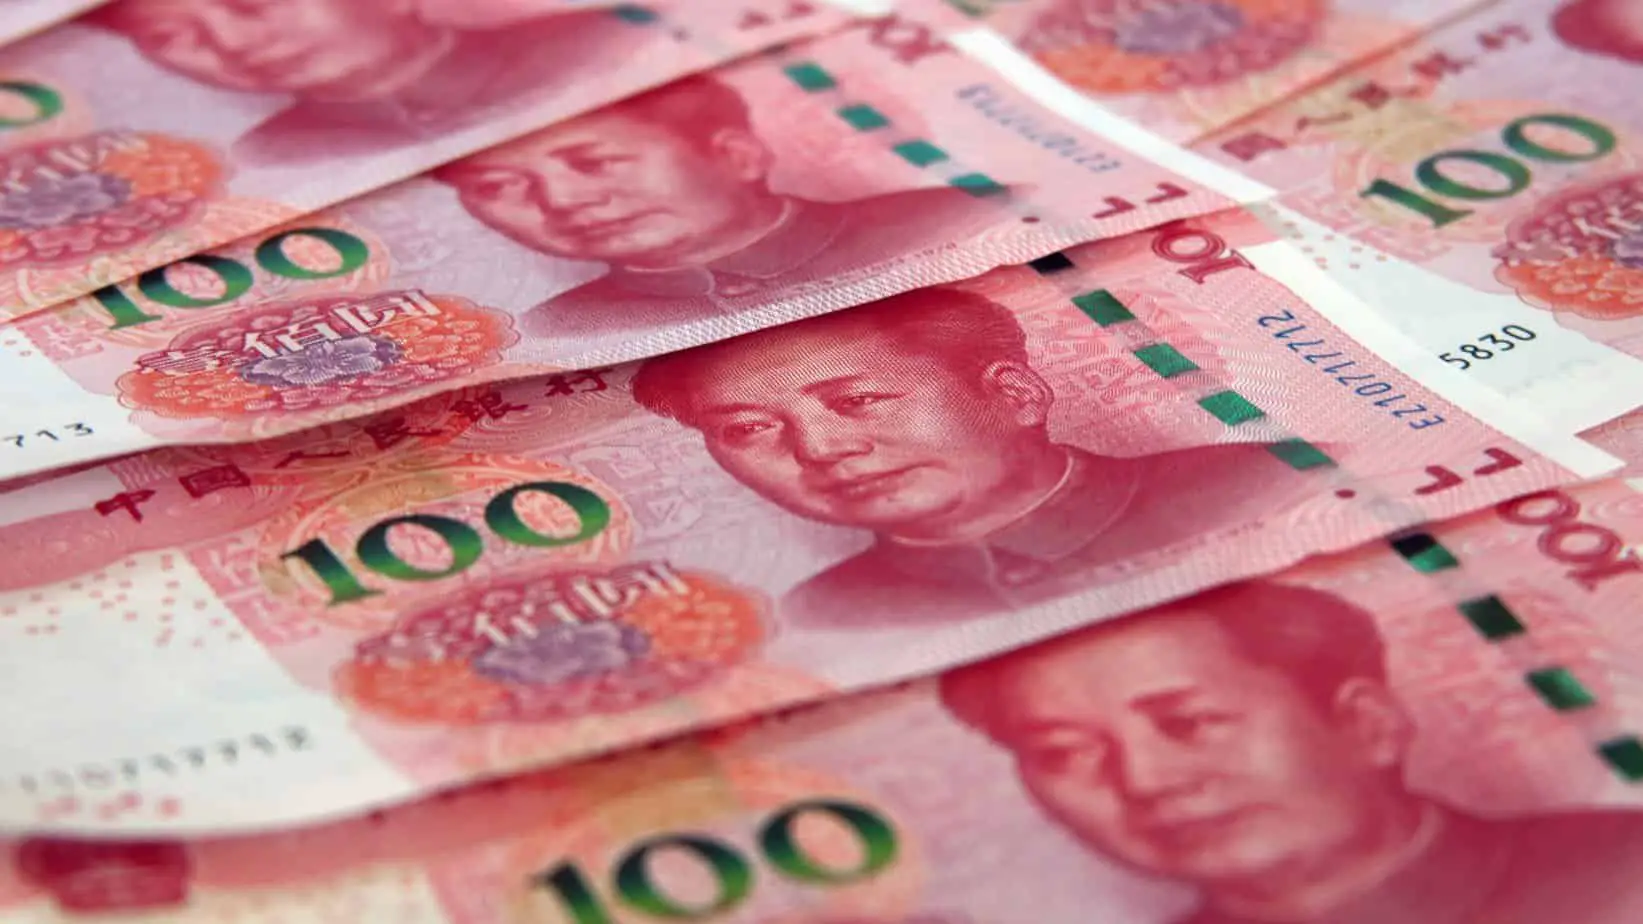 100 juan notes bank